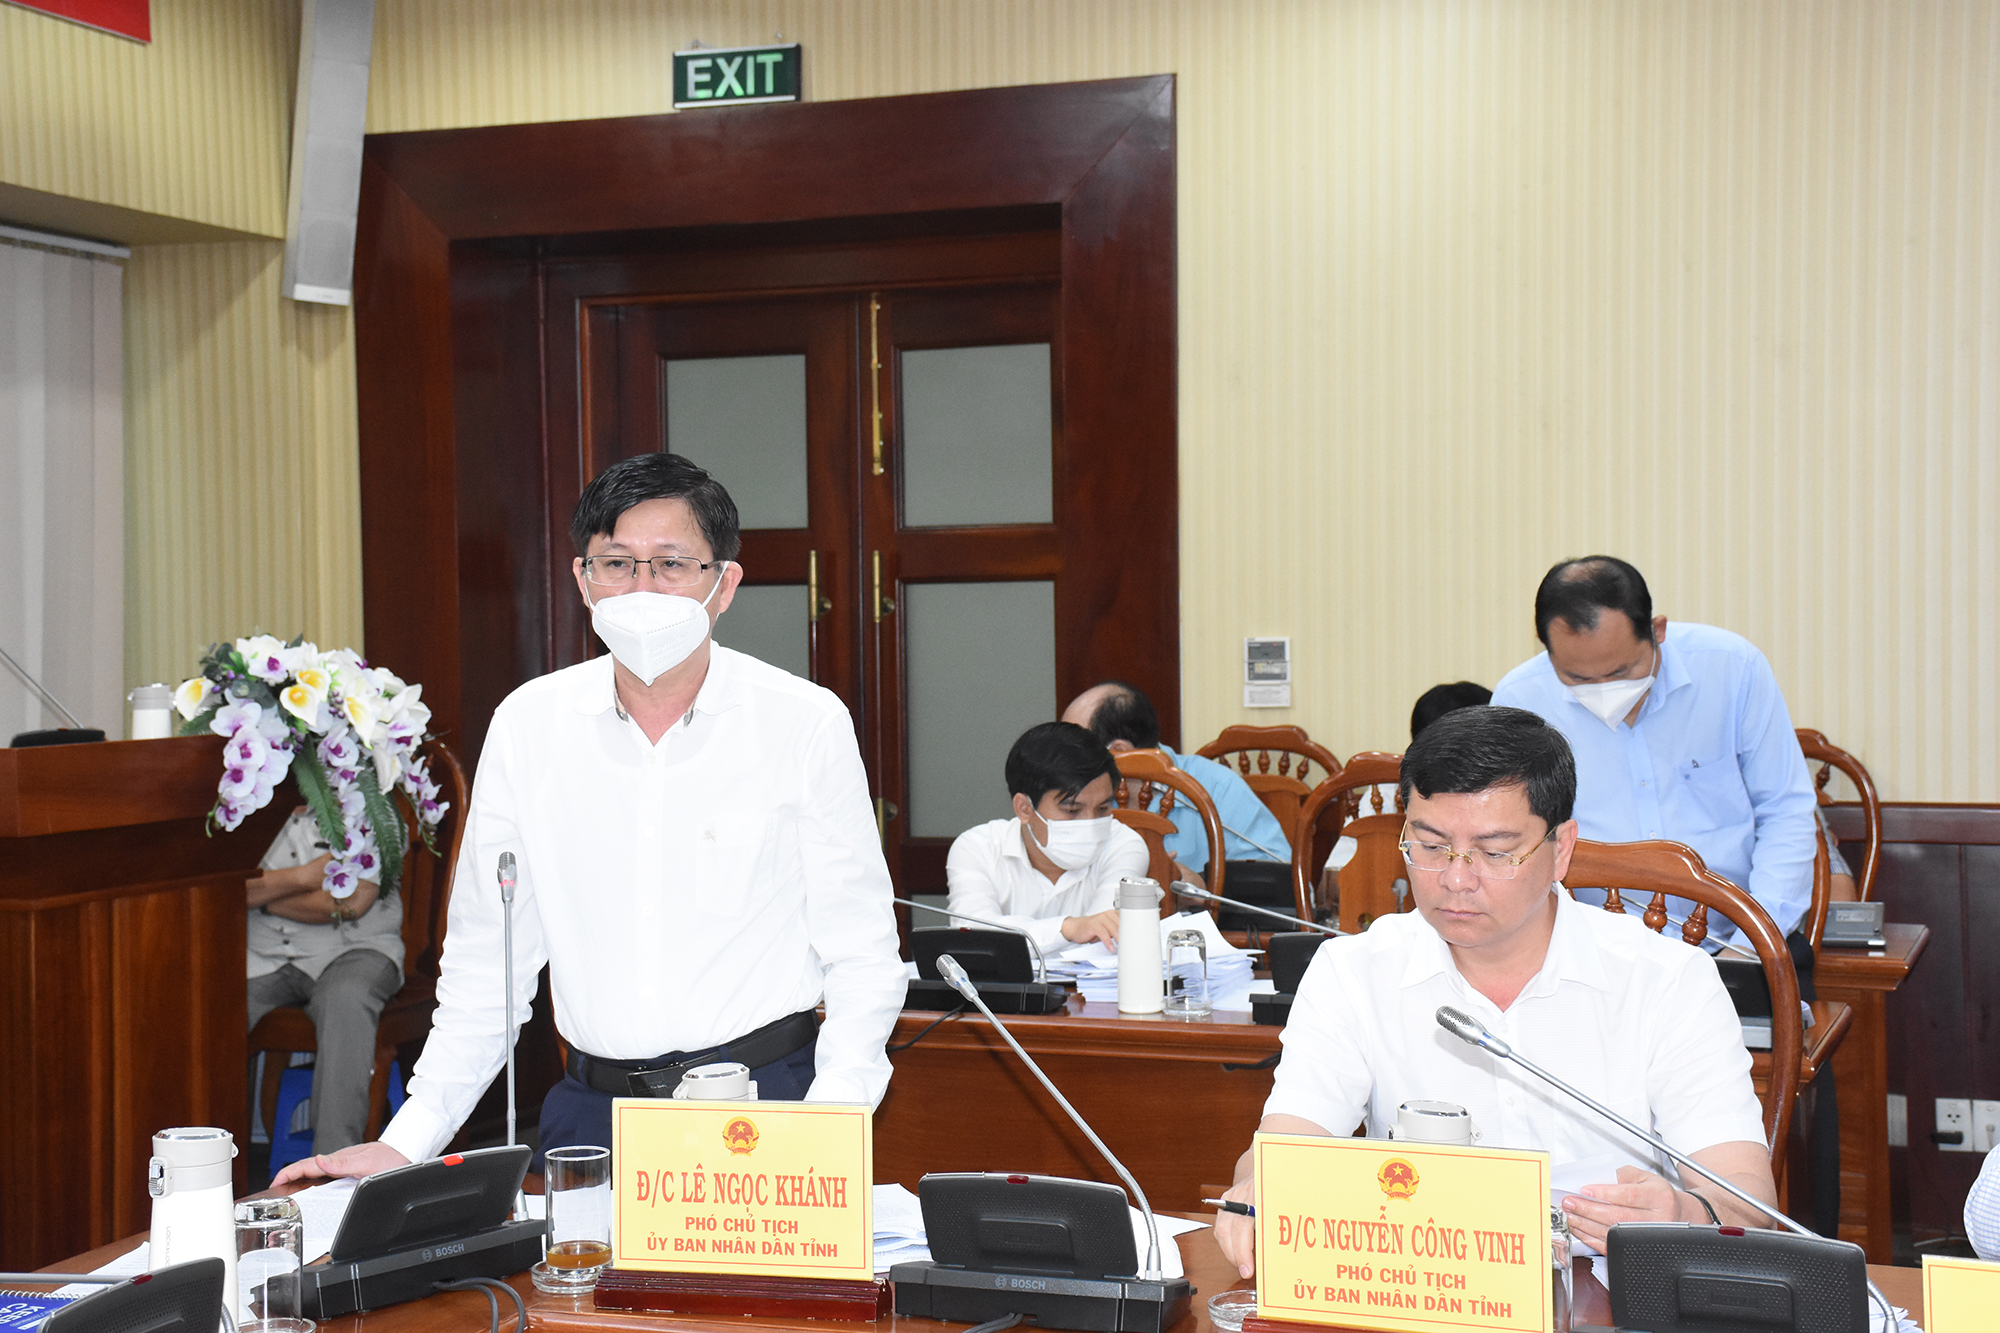 Ông Lê Ngọc Khánh, Phó chủ tịch UBND phát biểu tại cuộc họp.